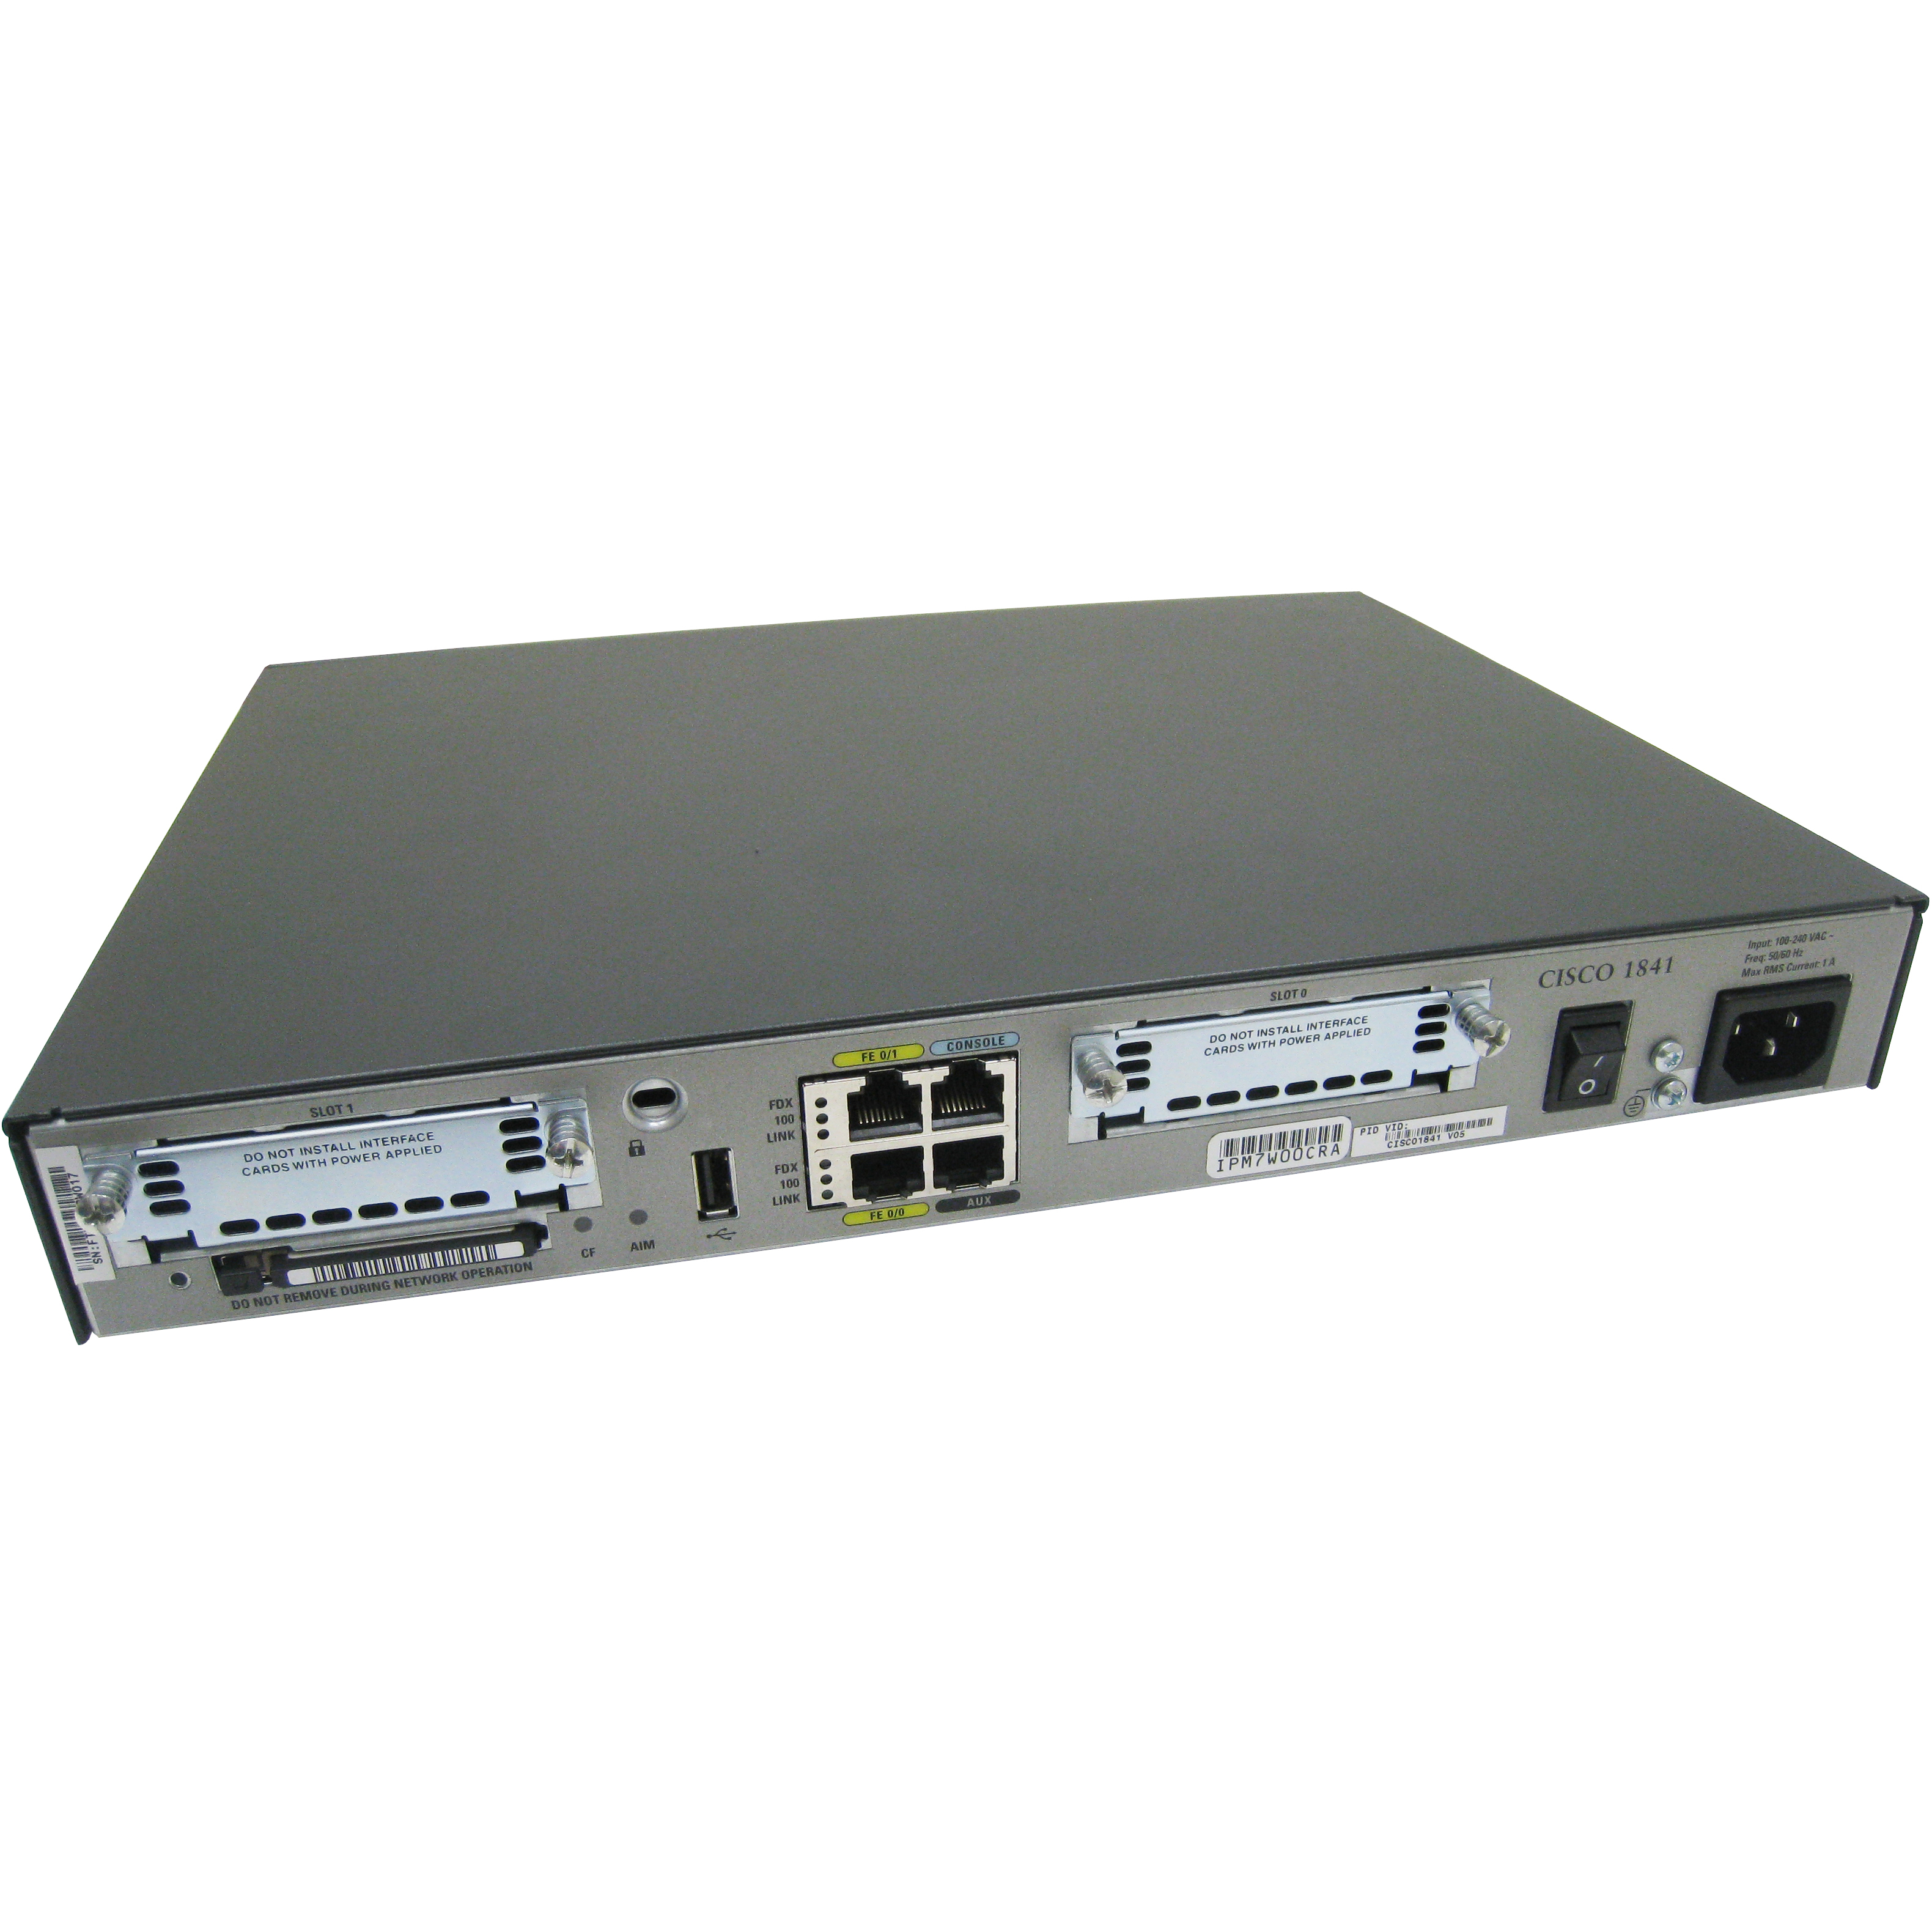 Cisco CISCO1841-ADSL2-I